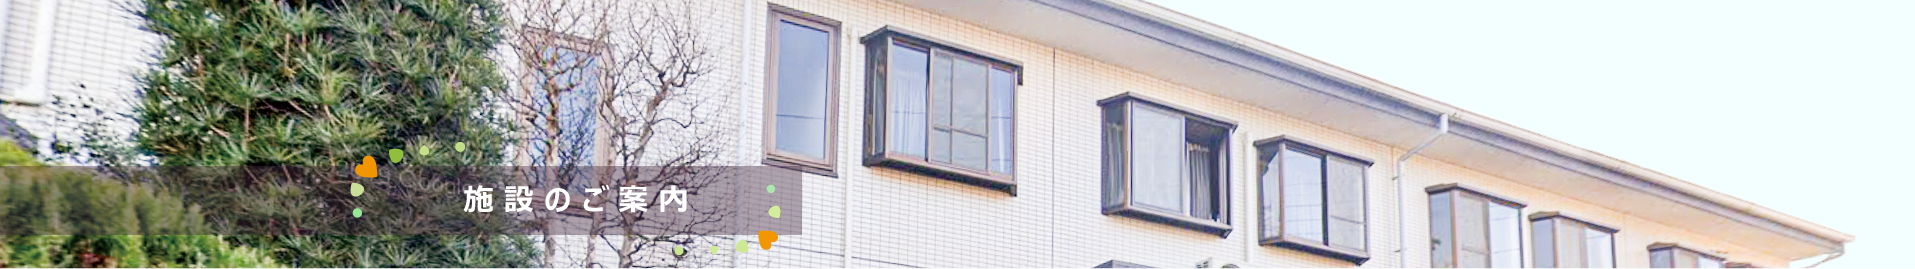 リベアホーム柏高柳は千葉県柏市の住宅型有料老人ホームです